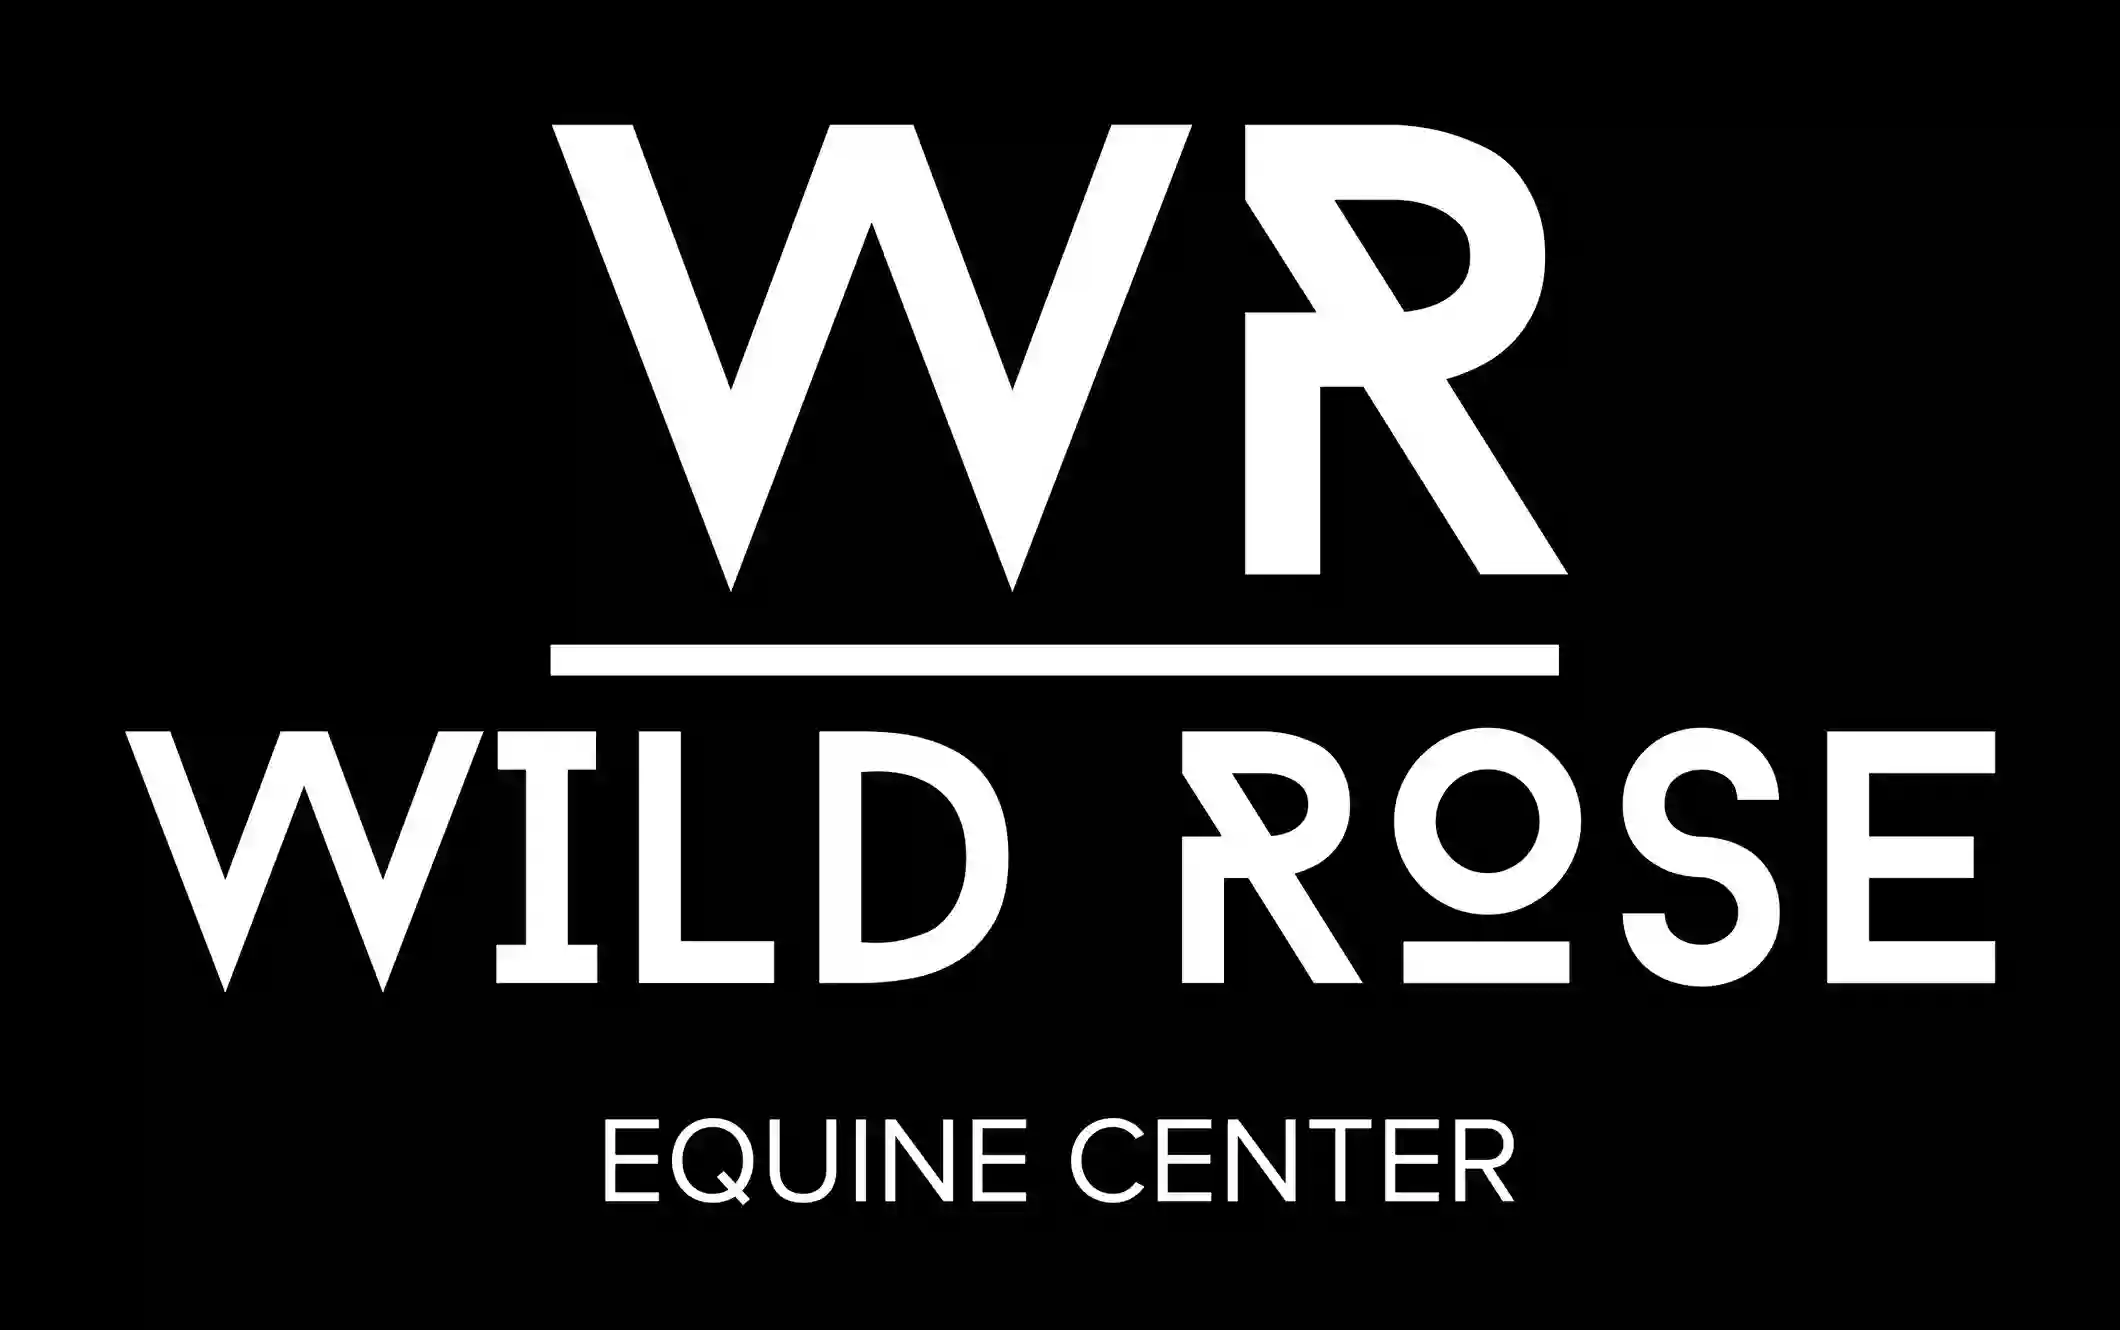 Wild Rose Equine Center